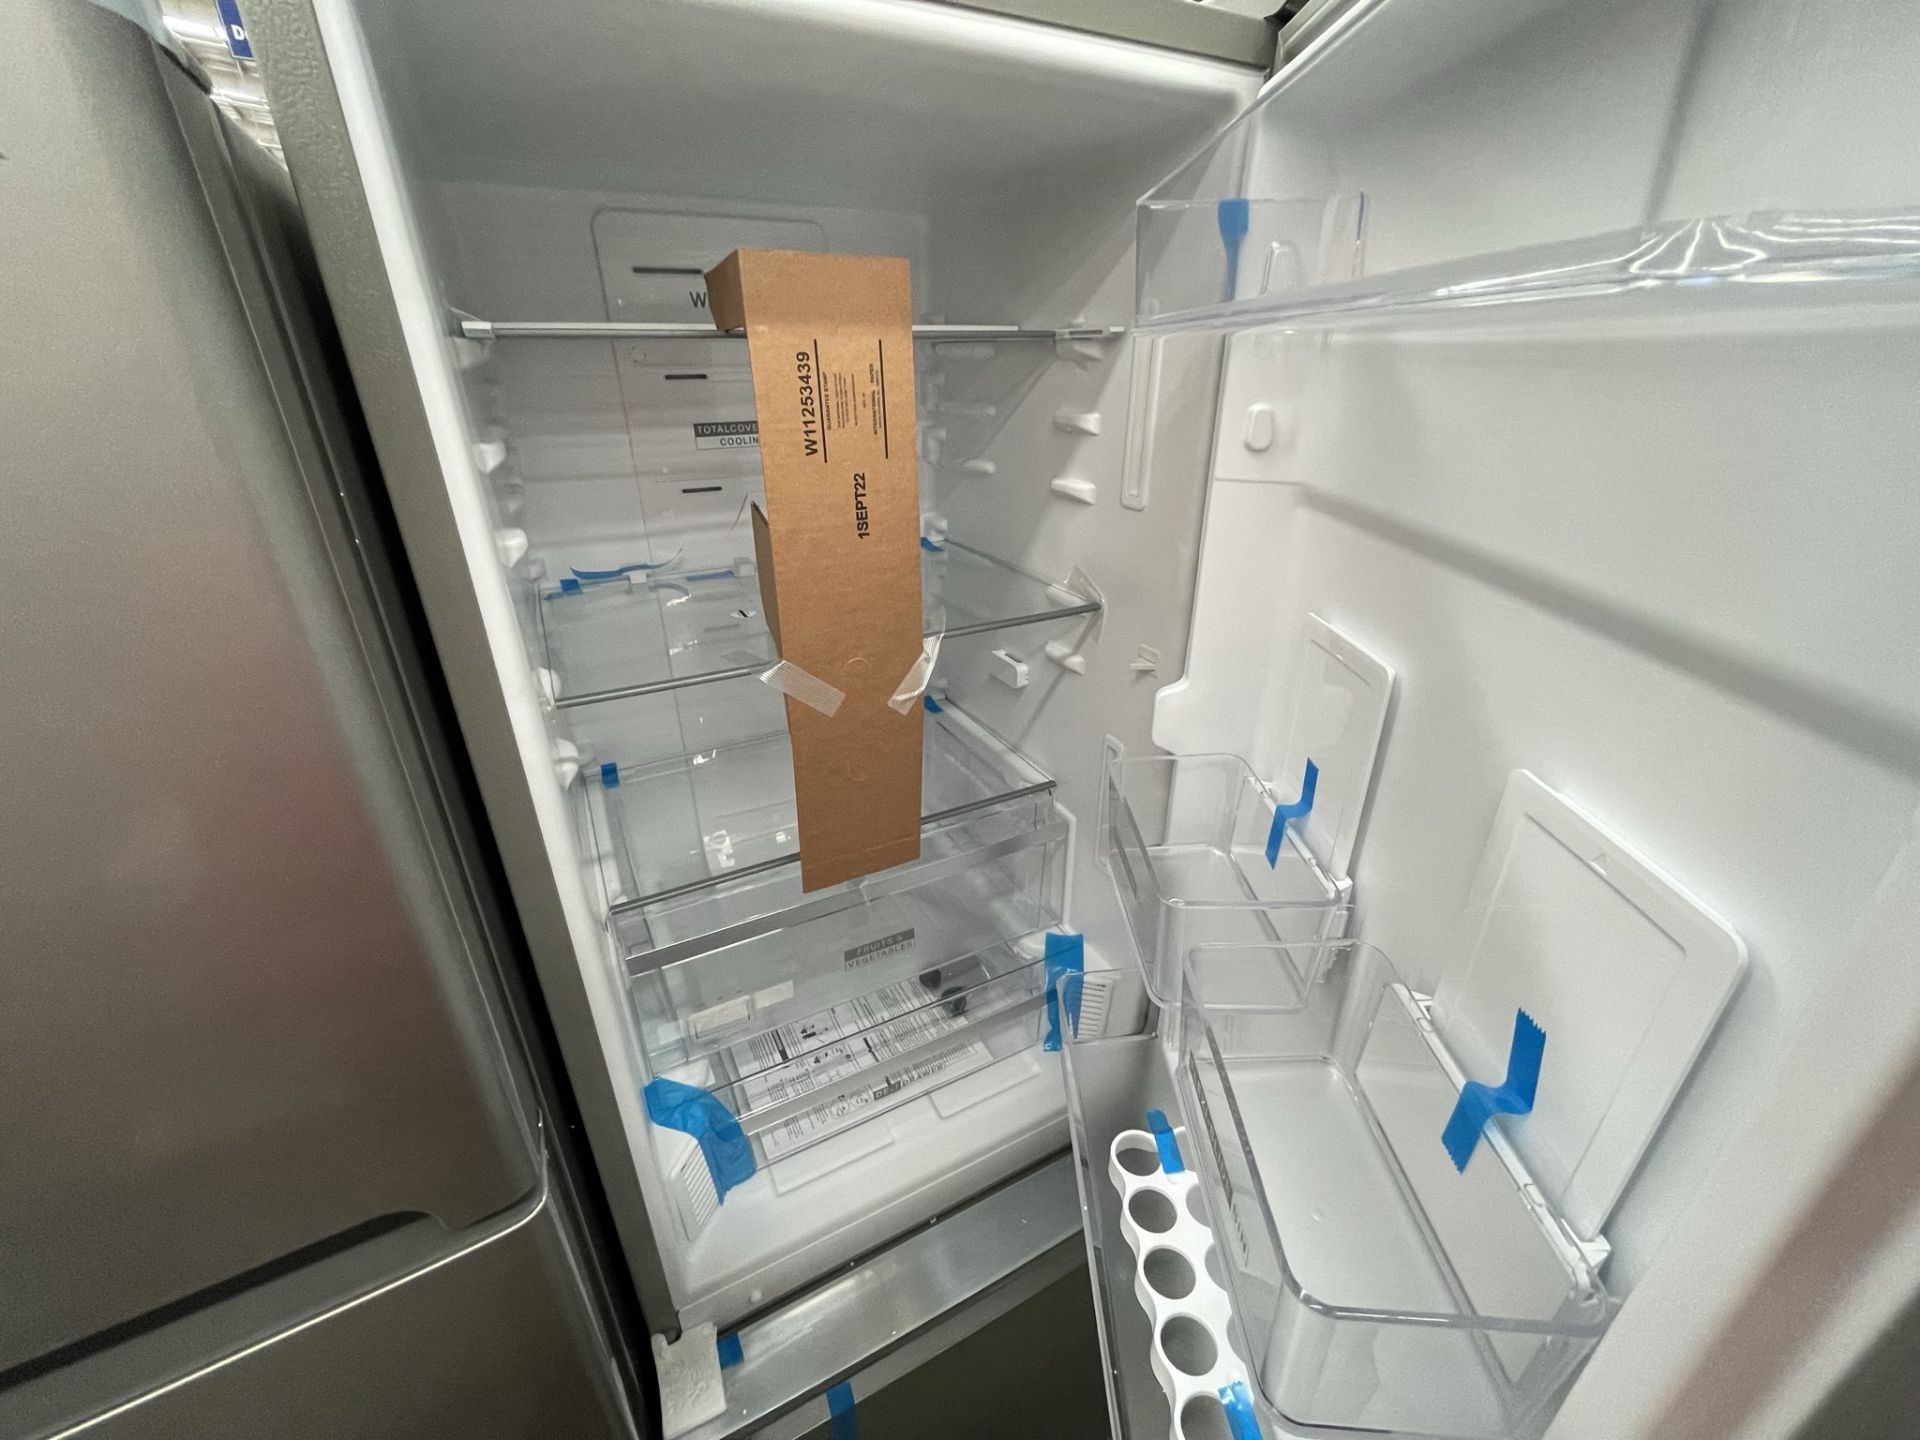 (EQUIPO NUEVO) 1 Refrigerador Marca WHIRPOOL, Modelo WB1332A, Serie WB1332A03, Color GRIS, LB-61189 - Image 4 of 8